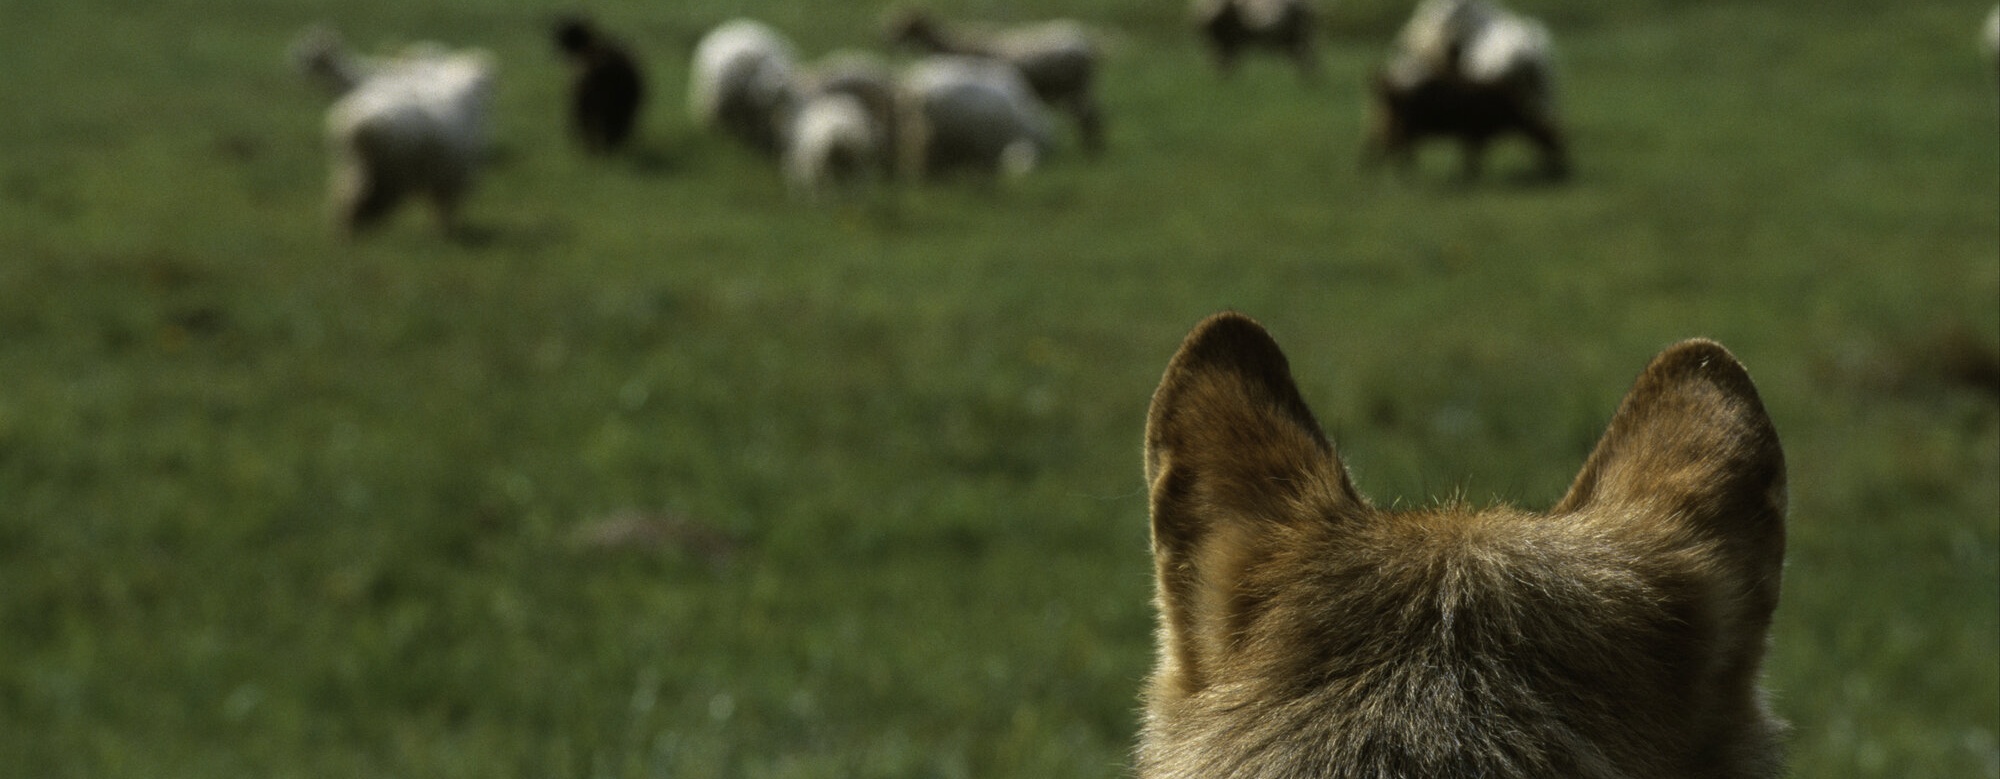 Náhrady škod způsobené vlky se rozšíří, začíná platit nová vyhláška